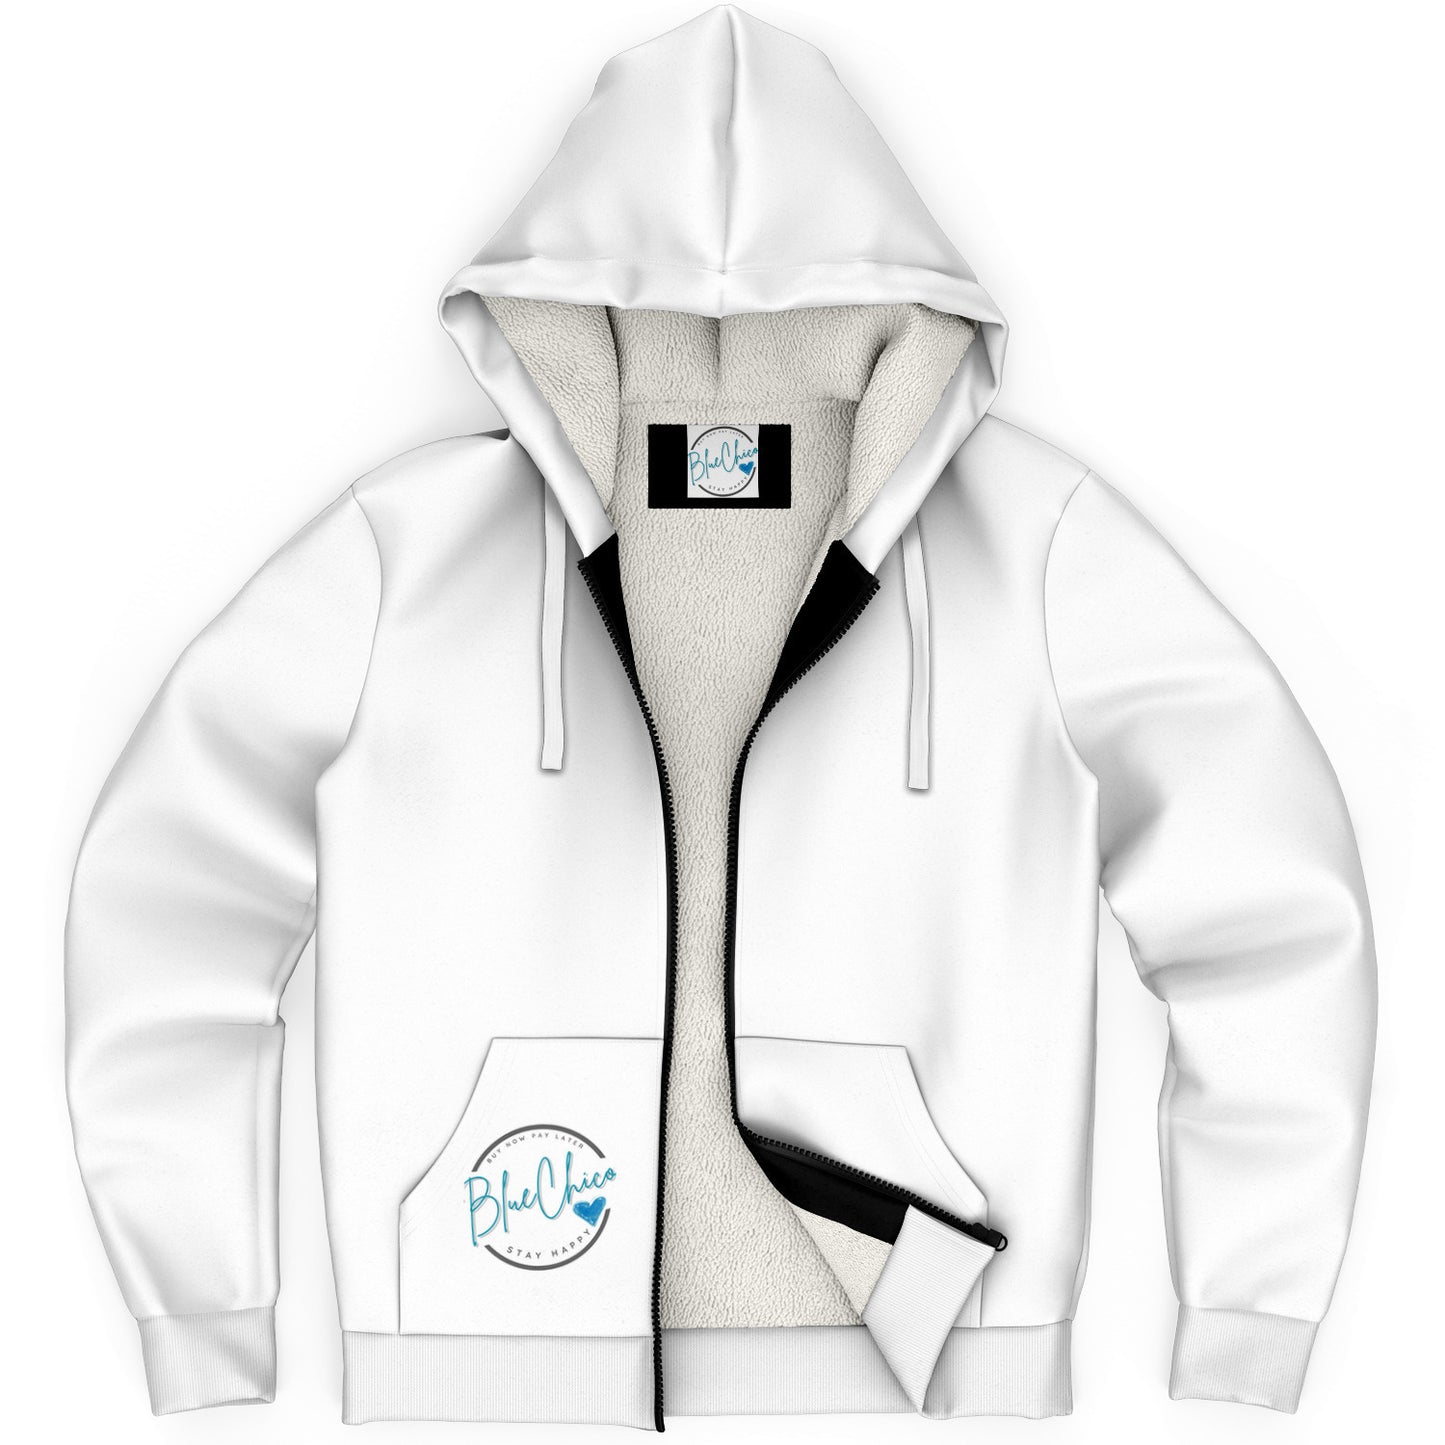 Snowy White Microfleece Coat